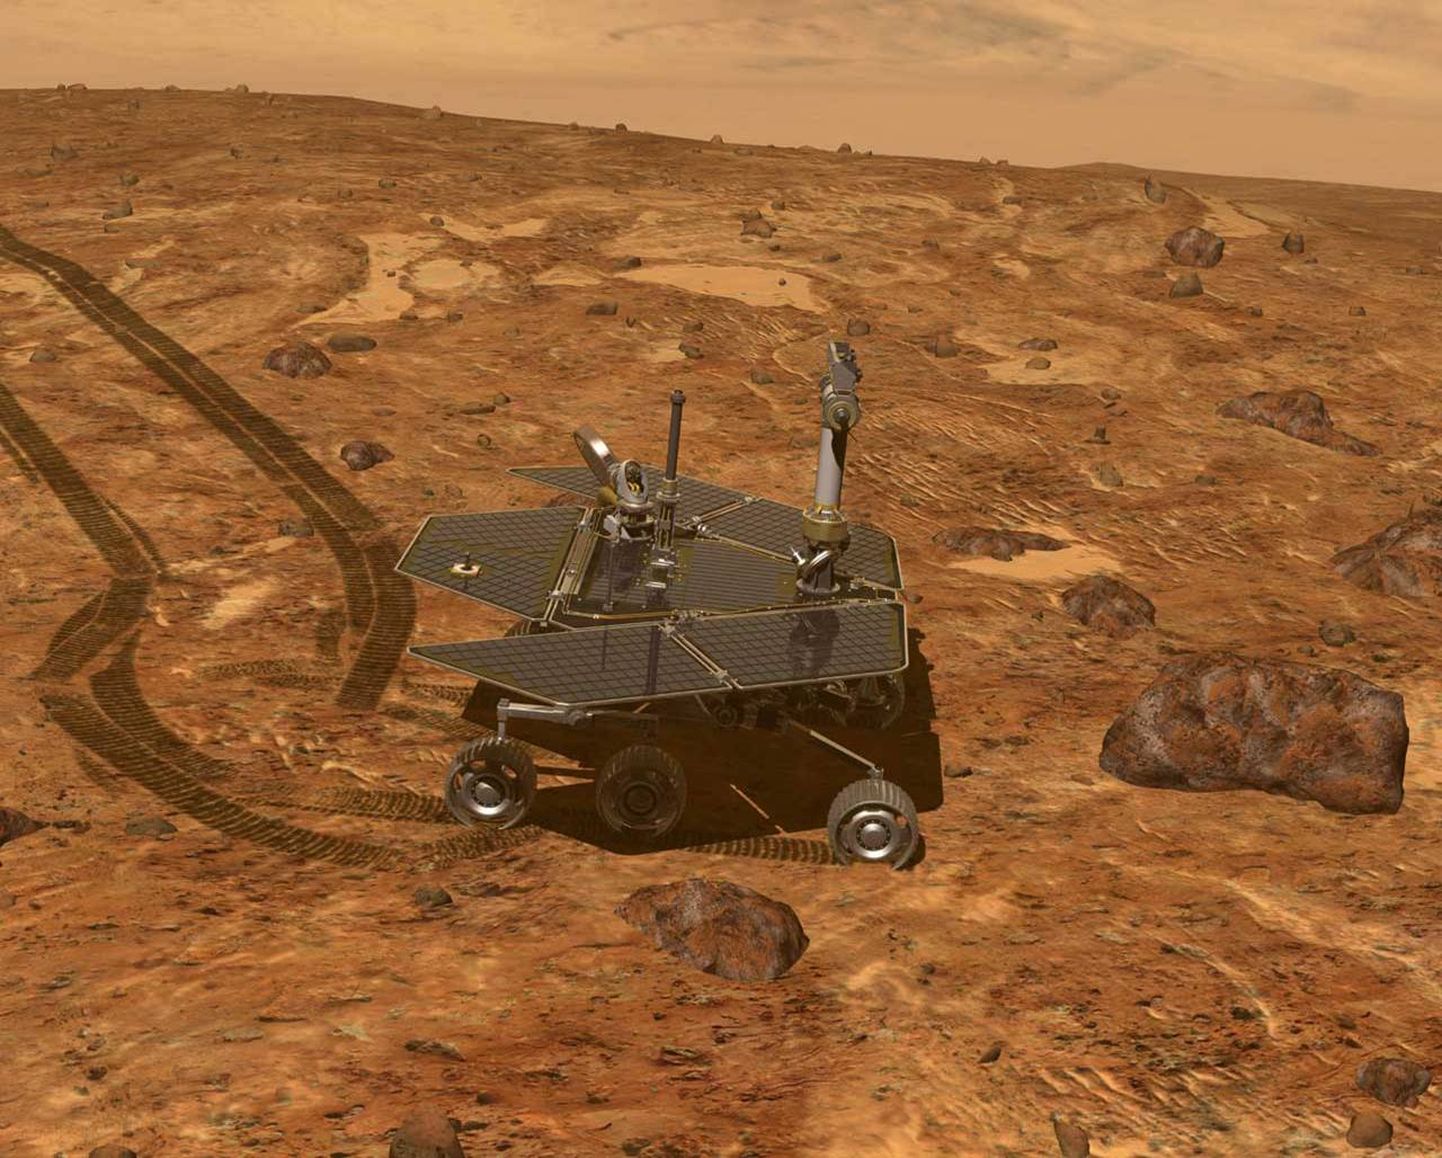 Kunstniku kujutis Opportunity'st Marsi pinnal.